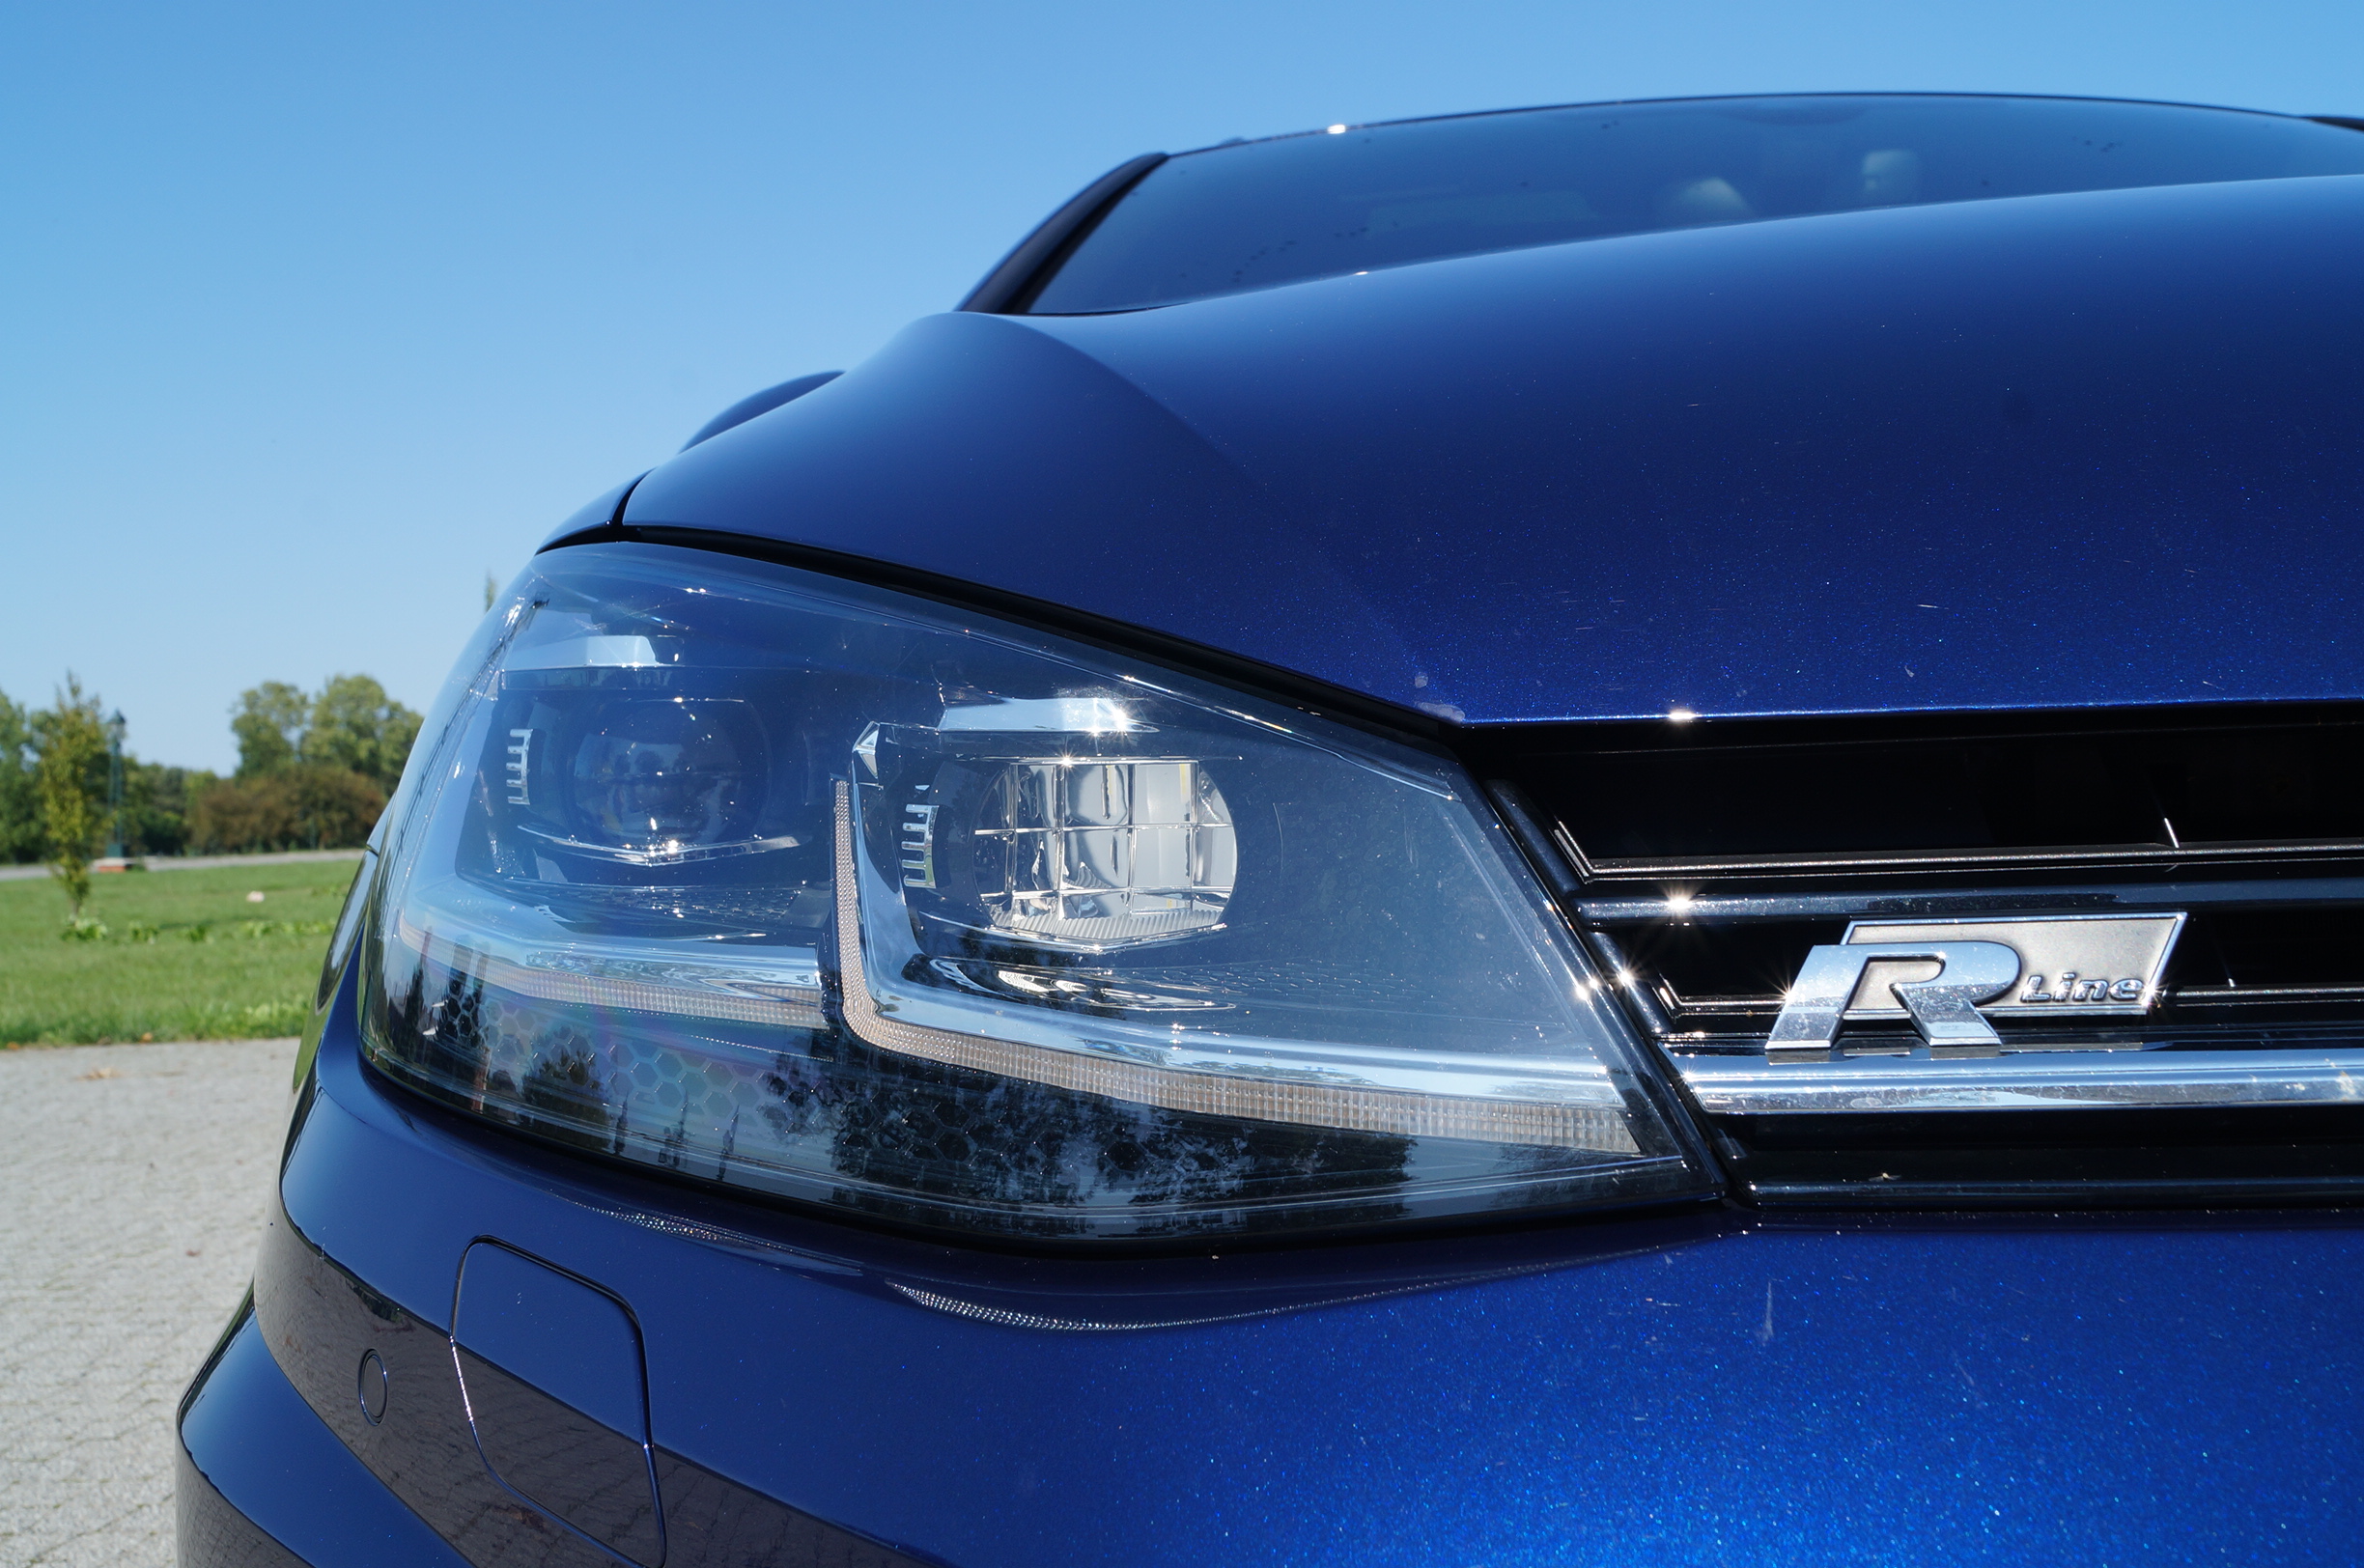 Volkswagen Golf Variant 2.0 TDI BlueMotion Highline DSG – Najlepszy Variant Golfa